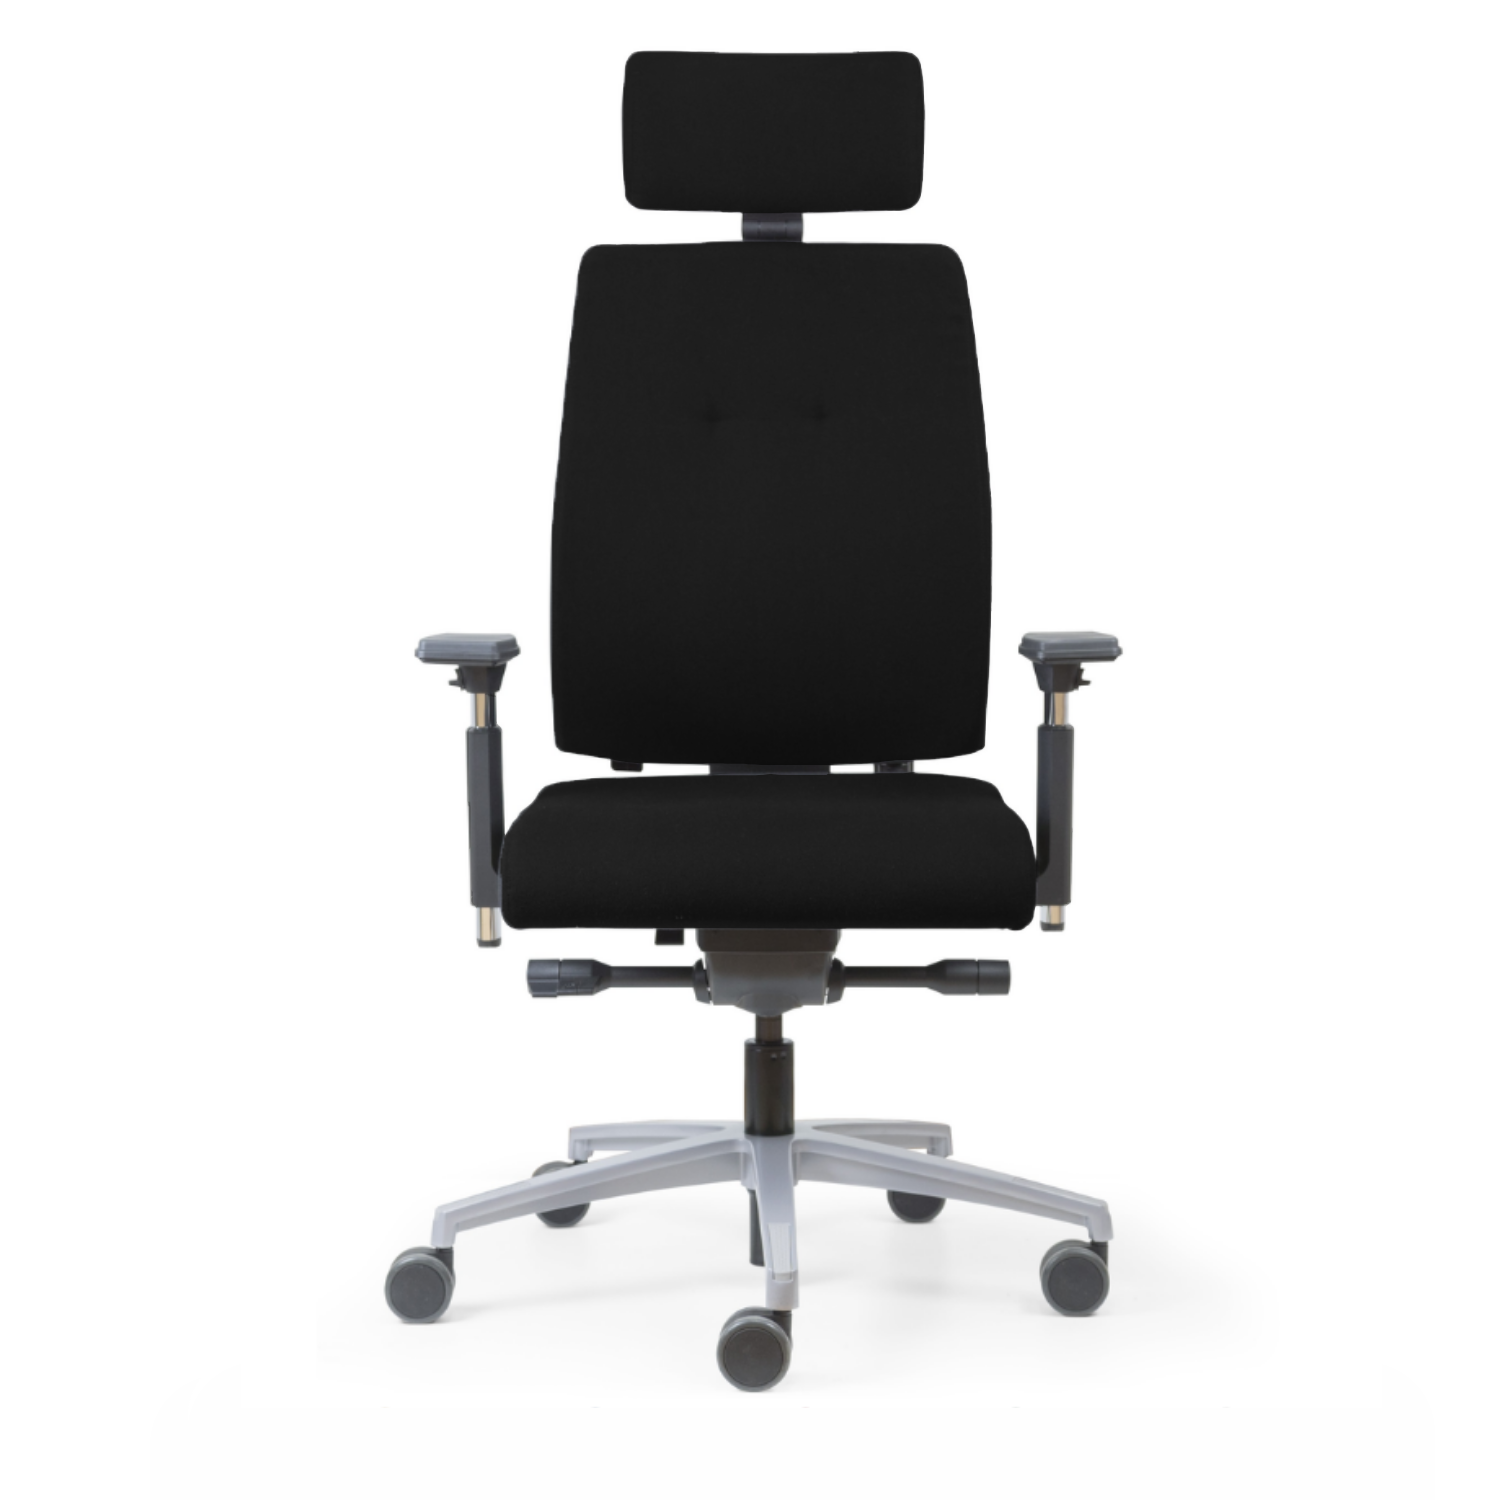 Fauteuil ergo usage intensif pour 24heures 24/24 - fauteuil surveillance ergonomique, csu, centre contrôle